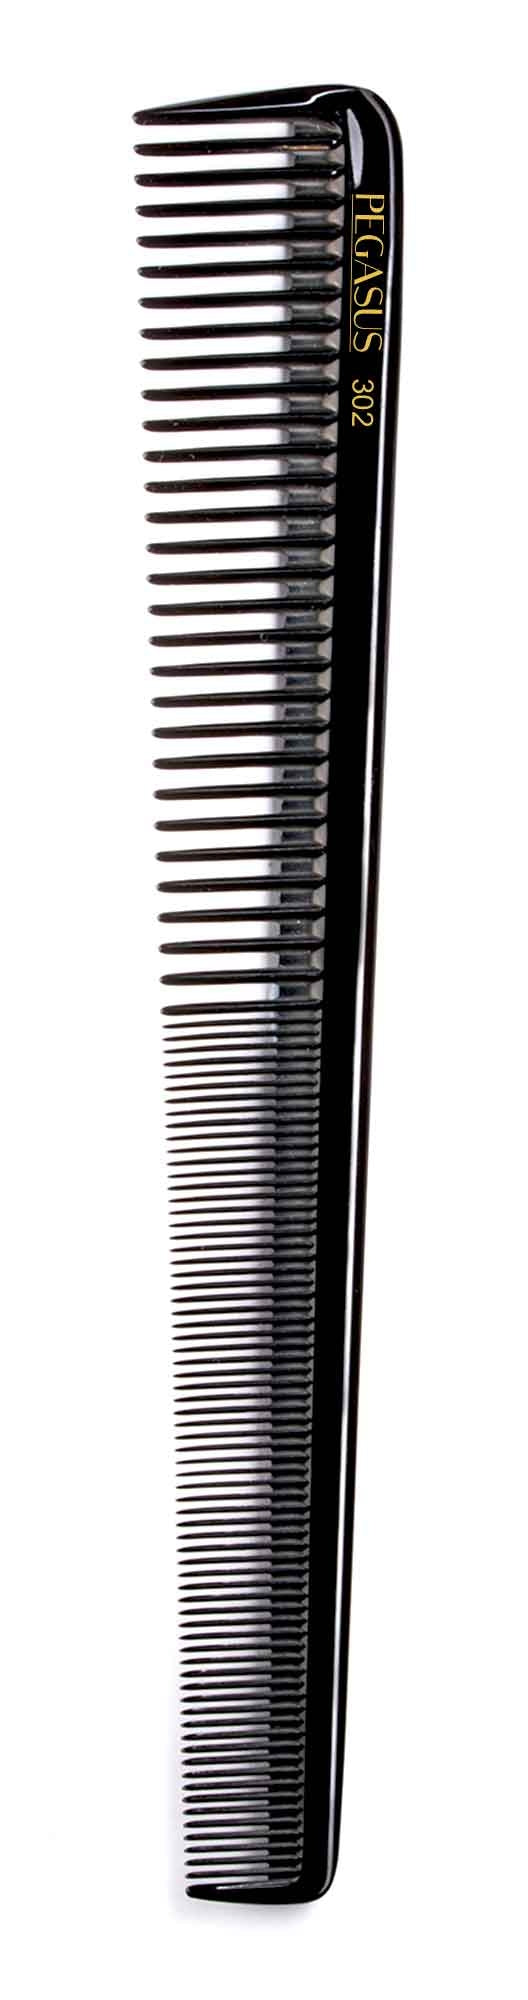 Pegasus Hard Rubber Comb (302) 7.5" Barber Comb